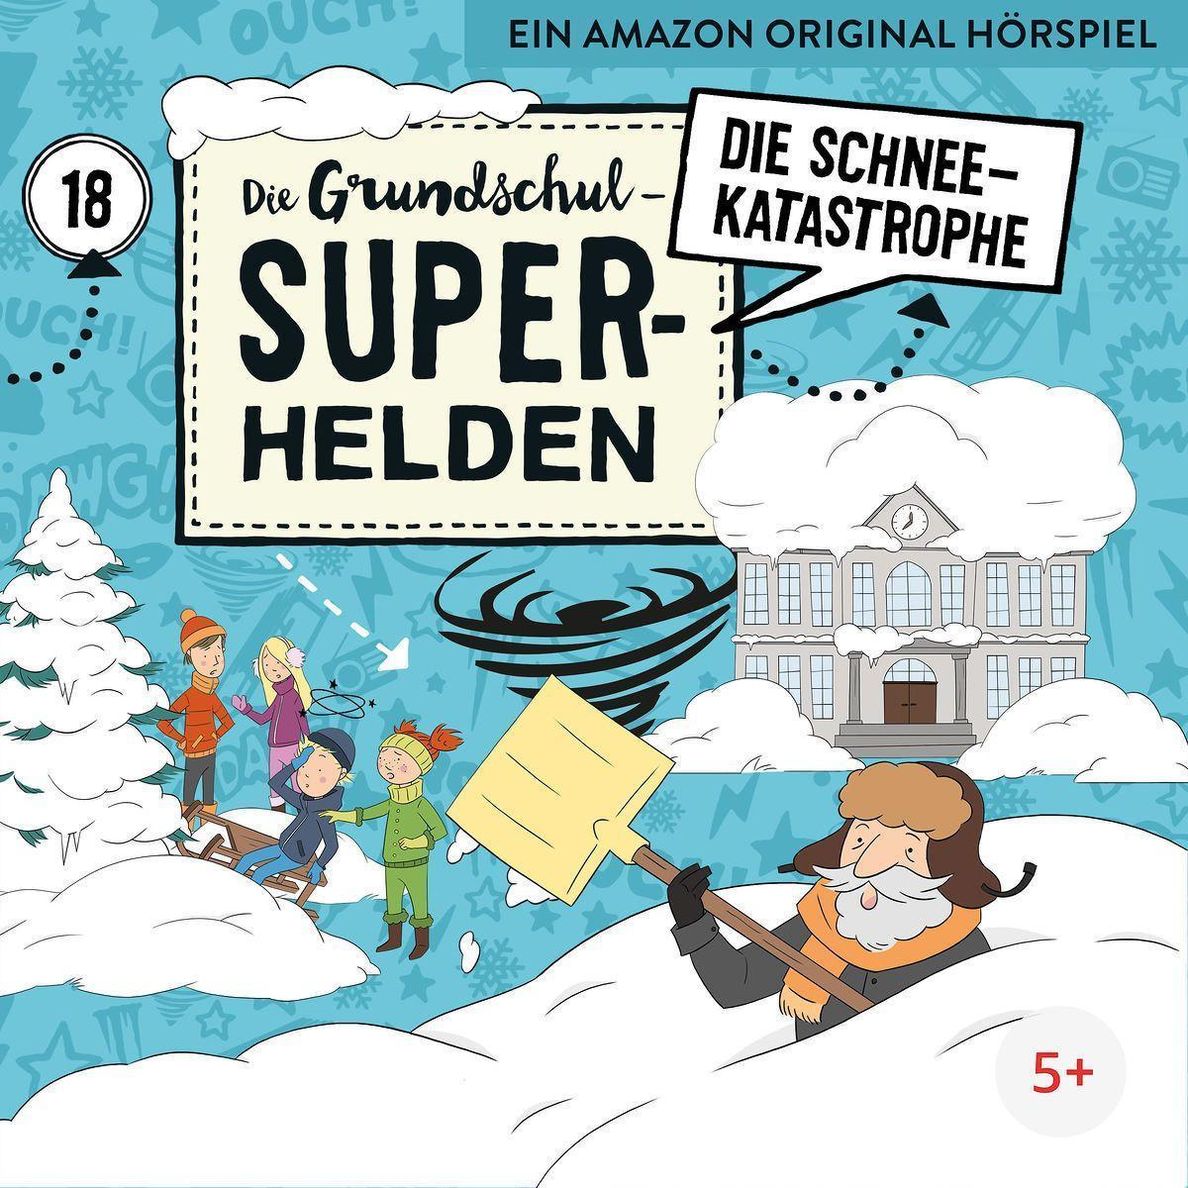 Die Grundschul-Superhelden - Die Schneekatastrophe, 1 Audio-CD Hörbuch  jetzt bei Weltbild.de bestellen